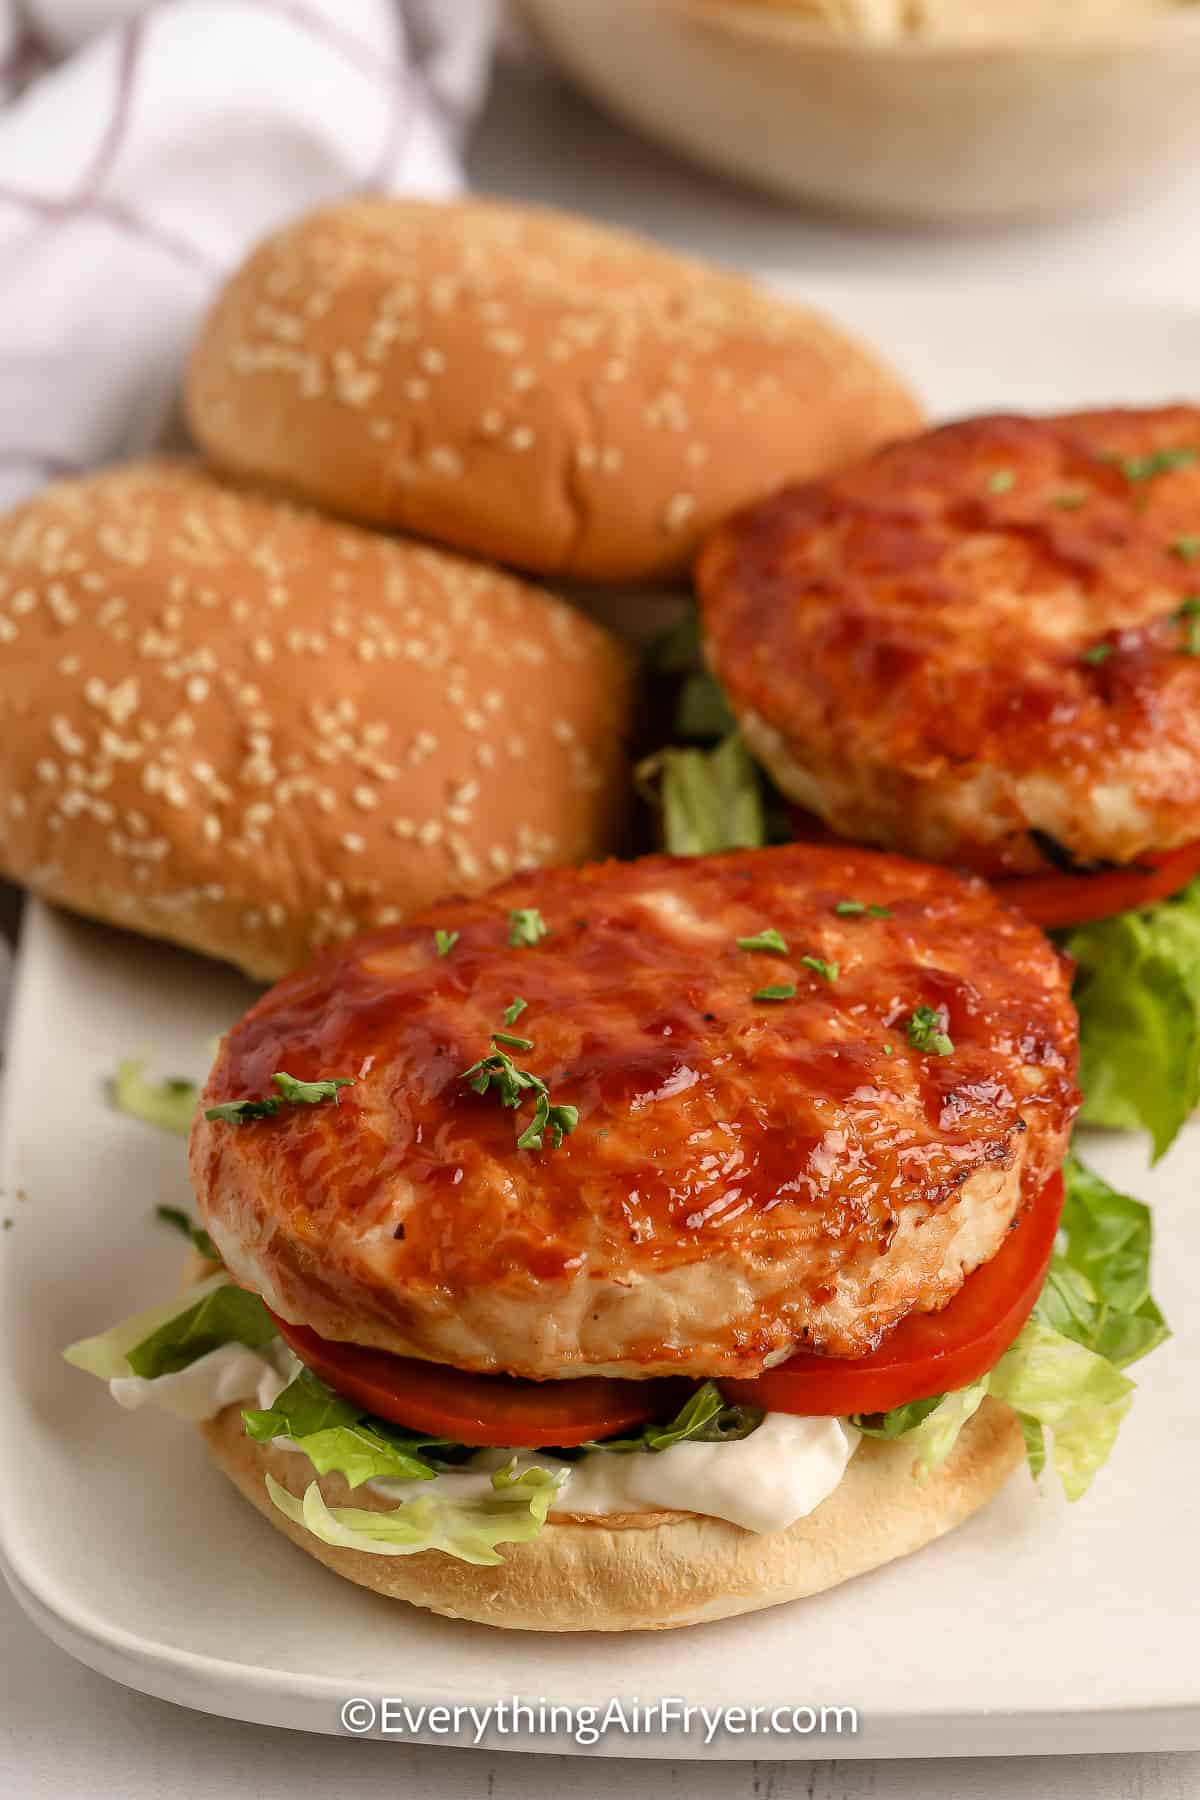 https://everythingairfryer.com/wp-content/uploads/2022/07/Air-Fryer-Frozen-Turkey-Burgers-EverythingAirFryer-10.jpg